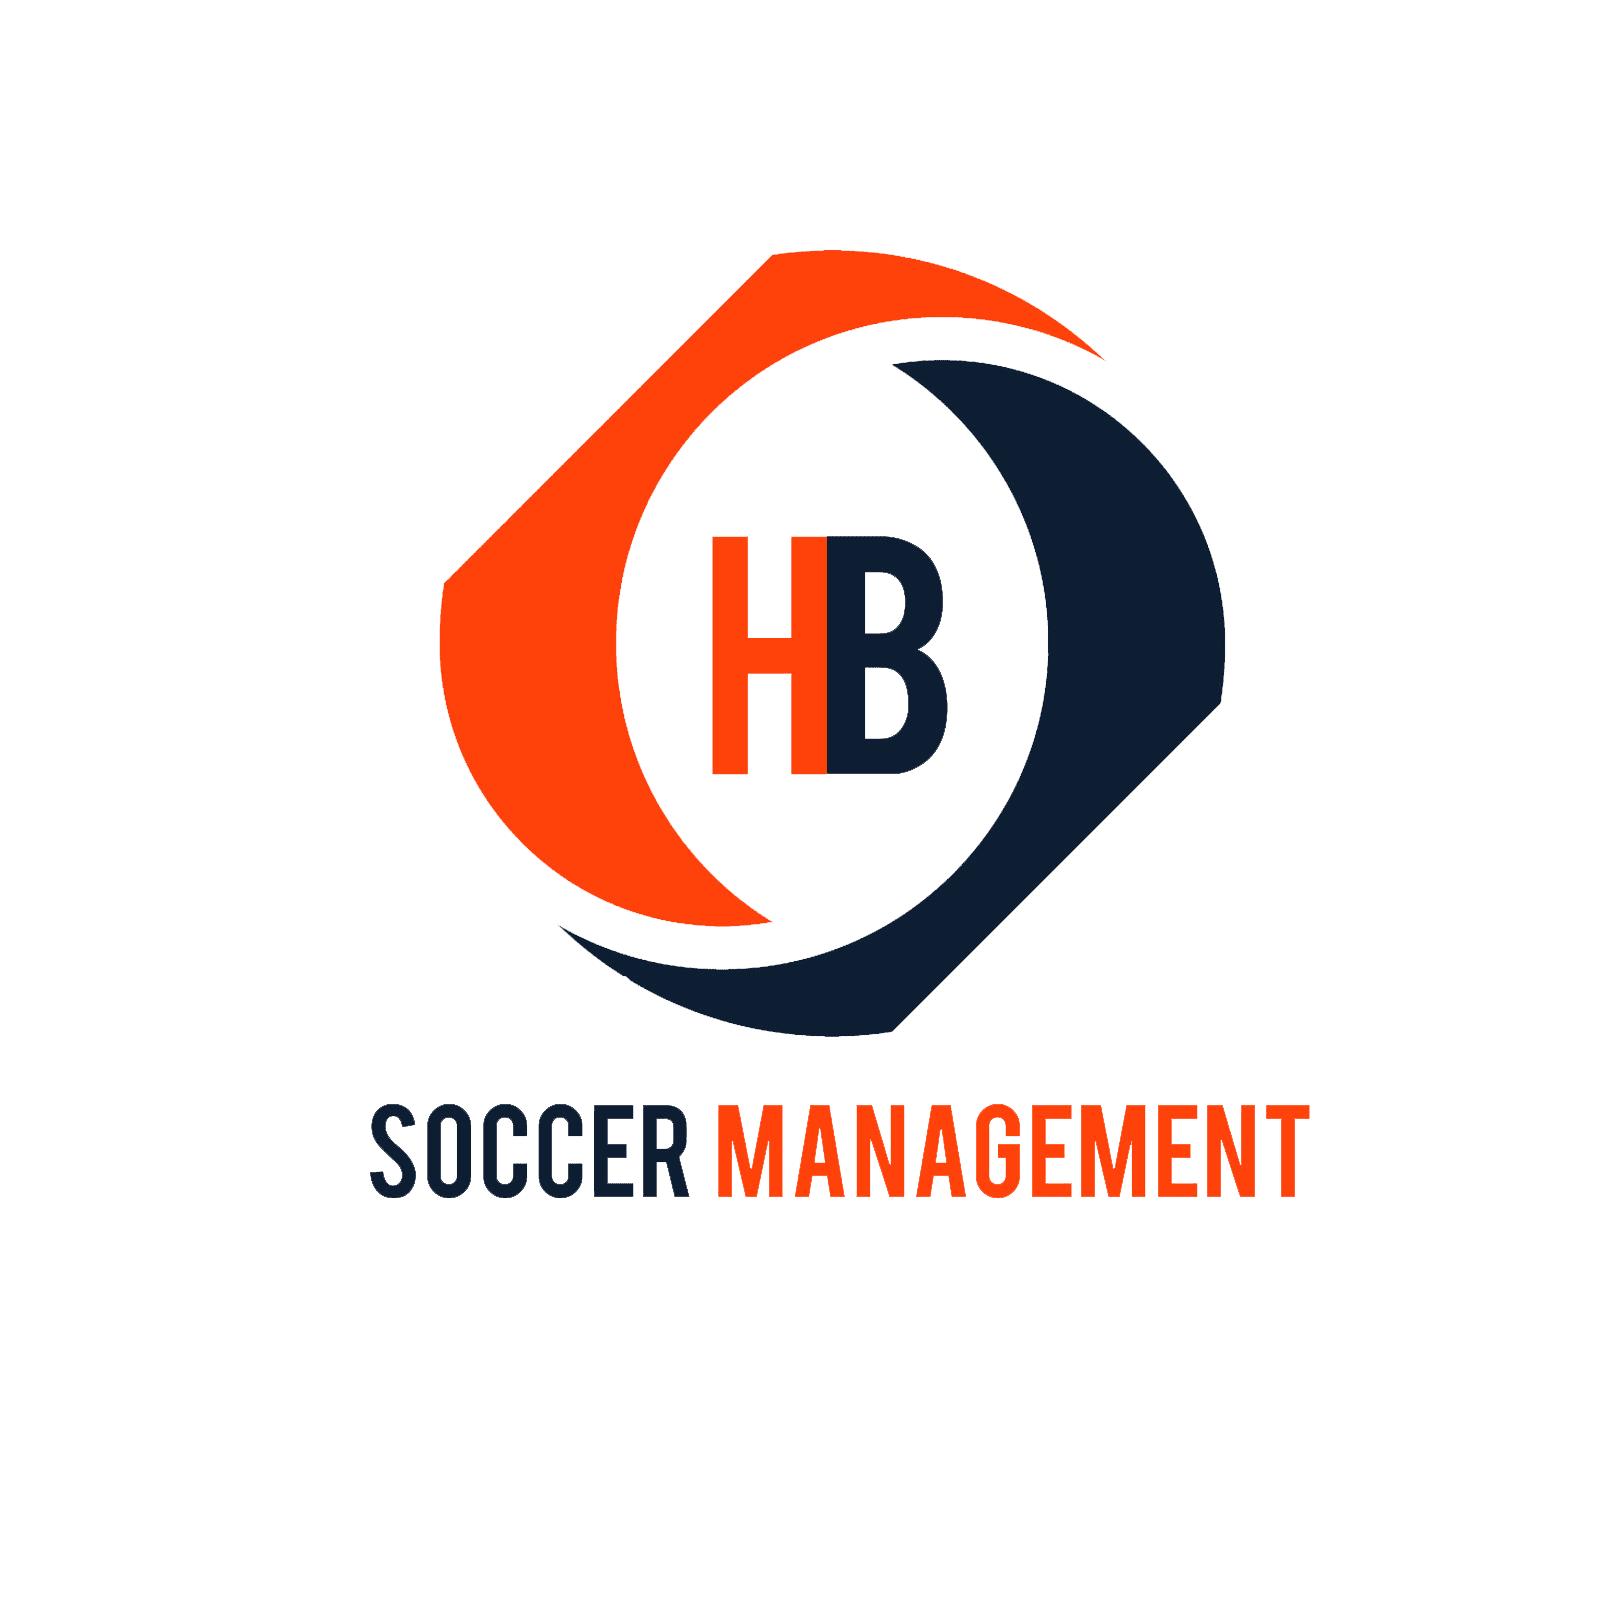 HB Soccer Management